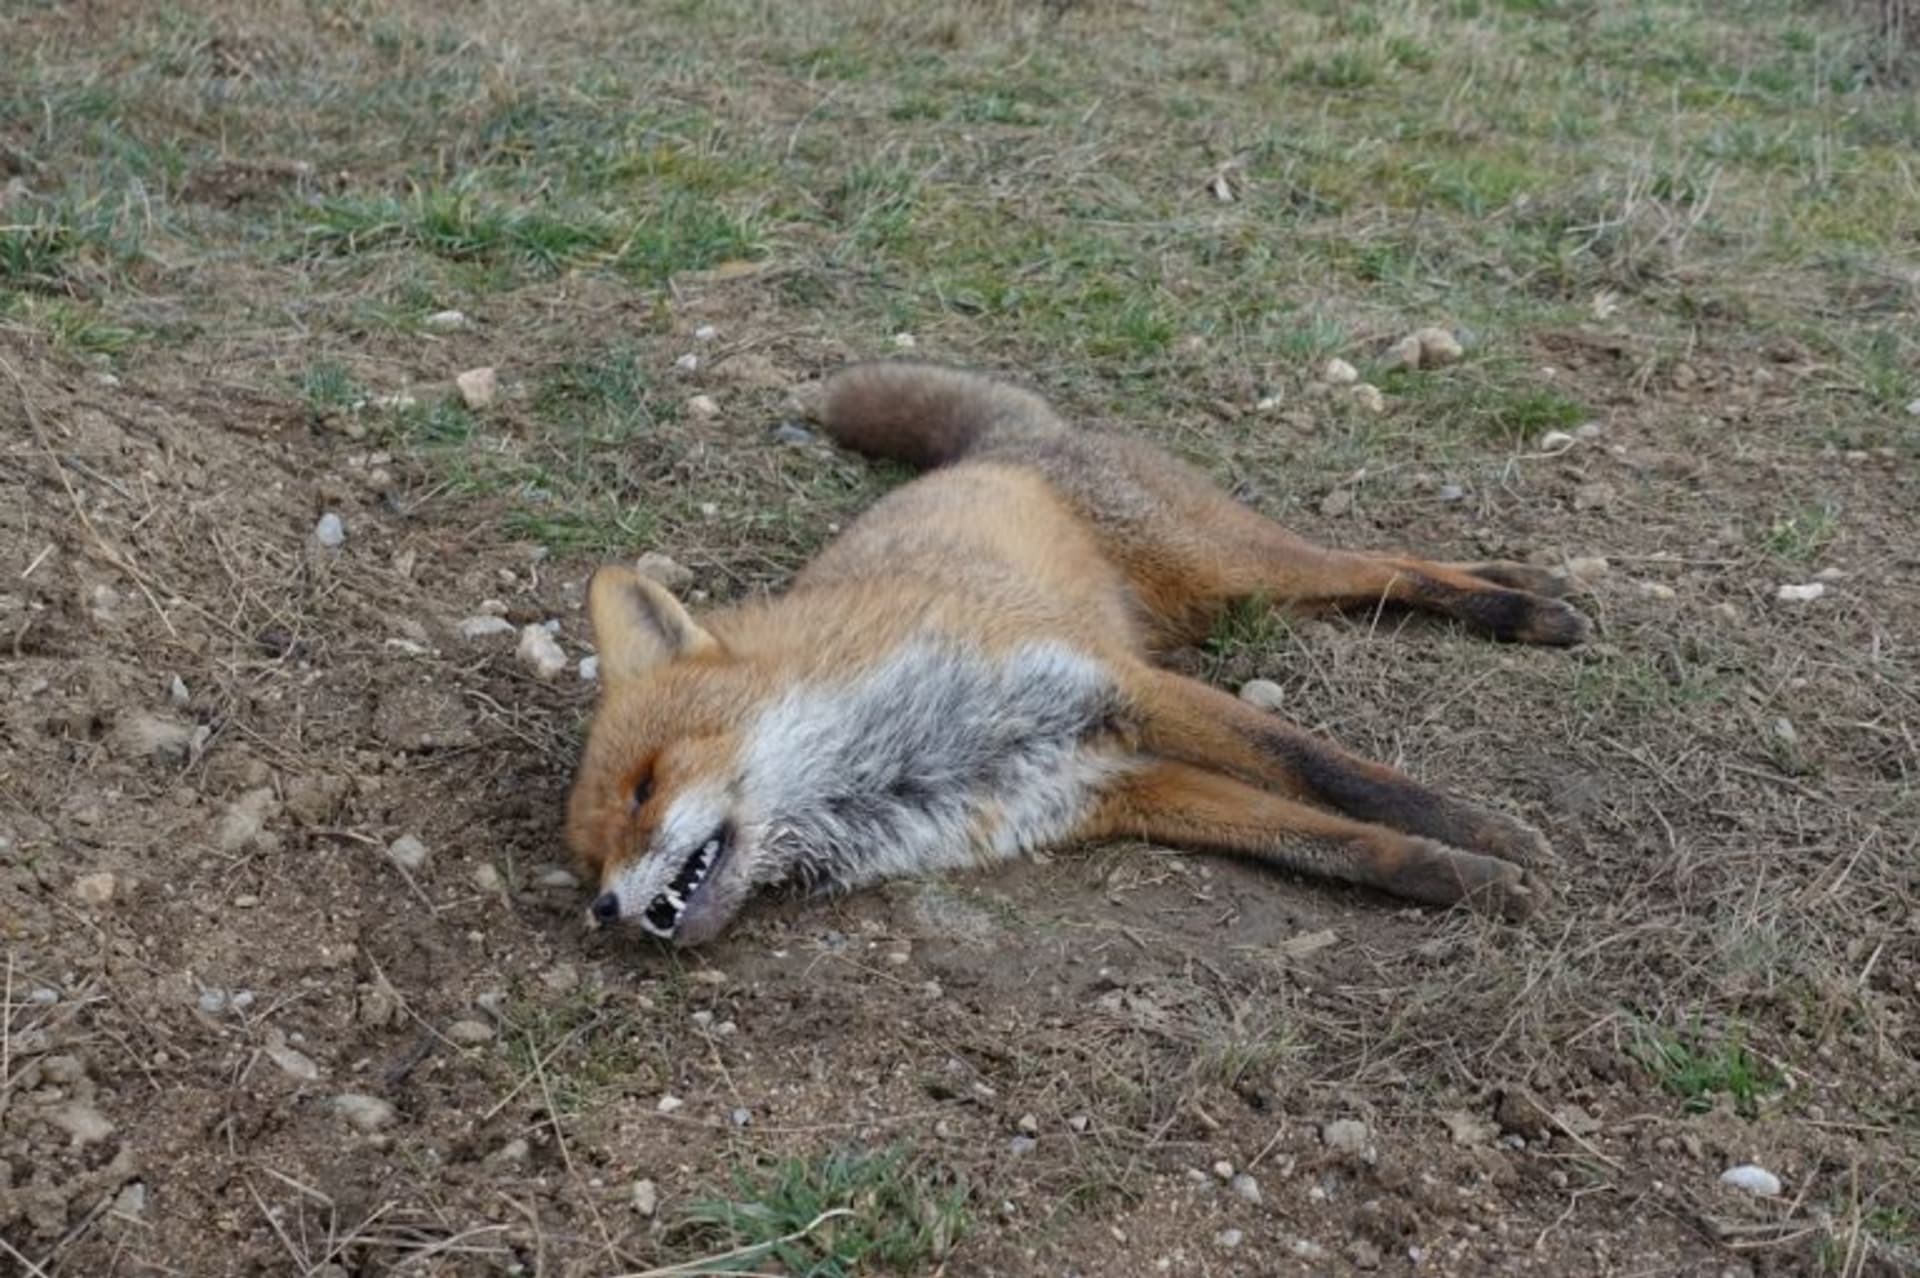 Uhynulá liška v pozici typické pro otravu karbofuranem.